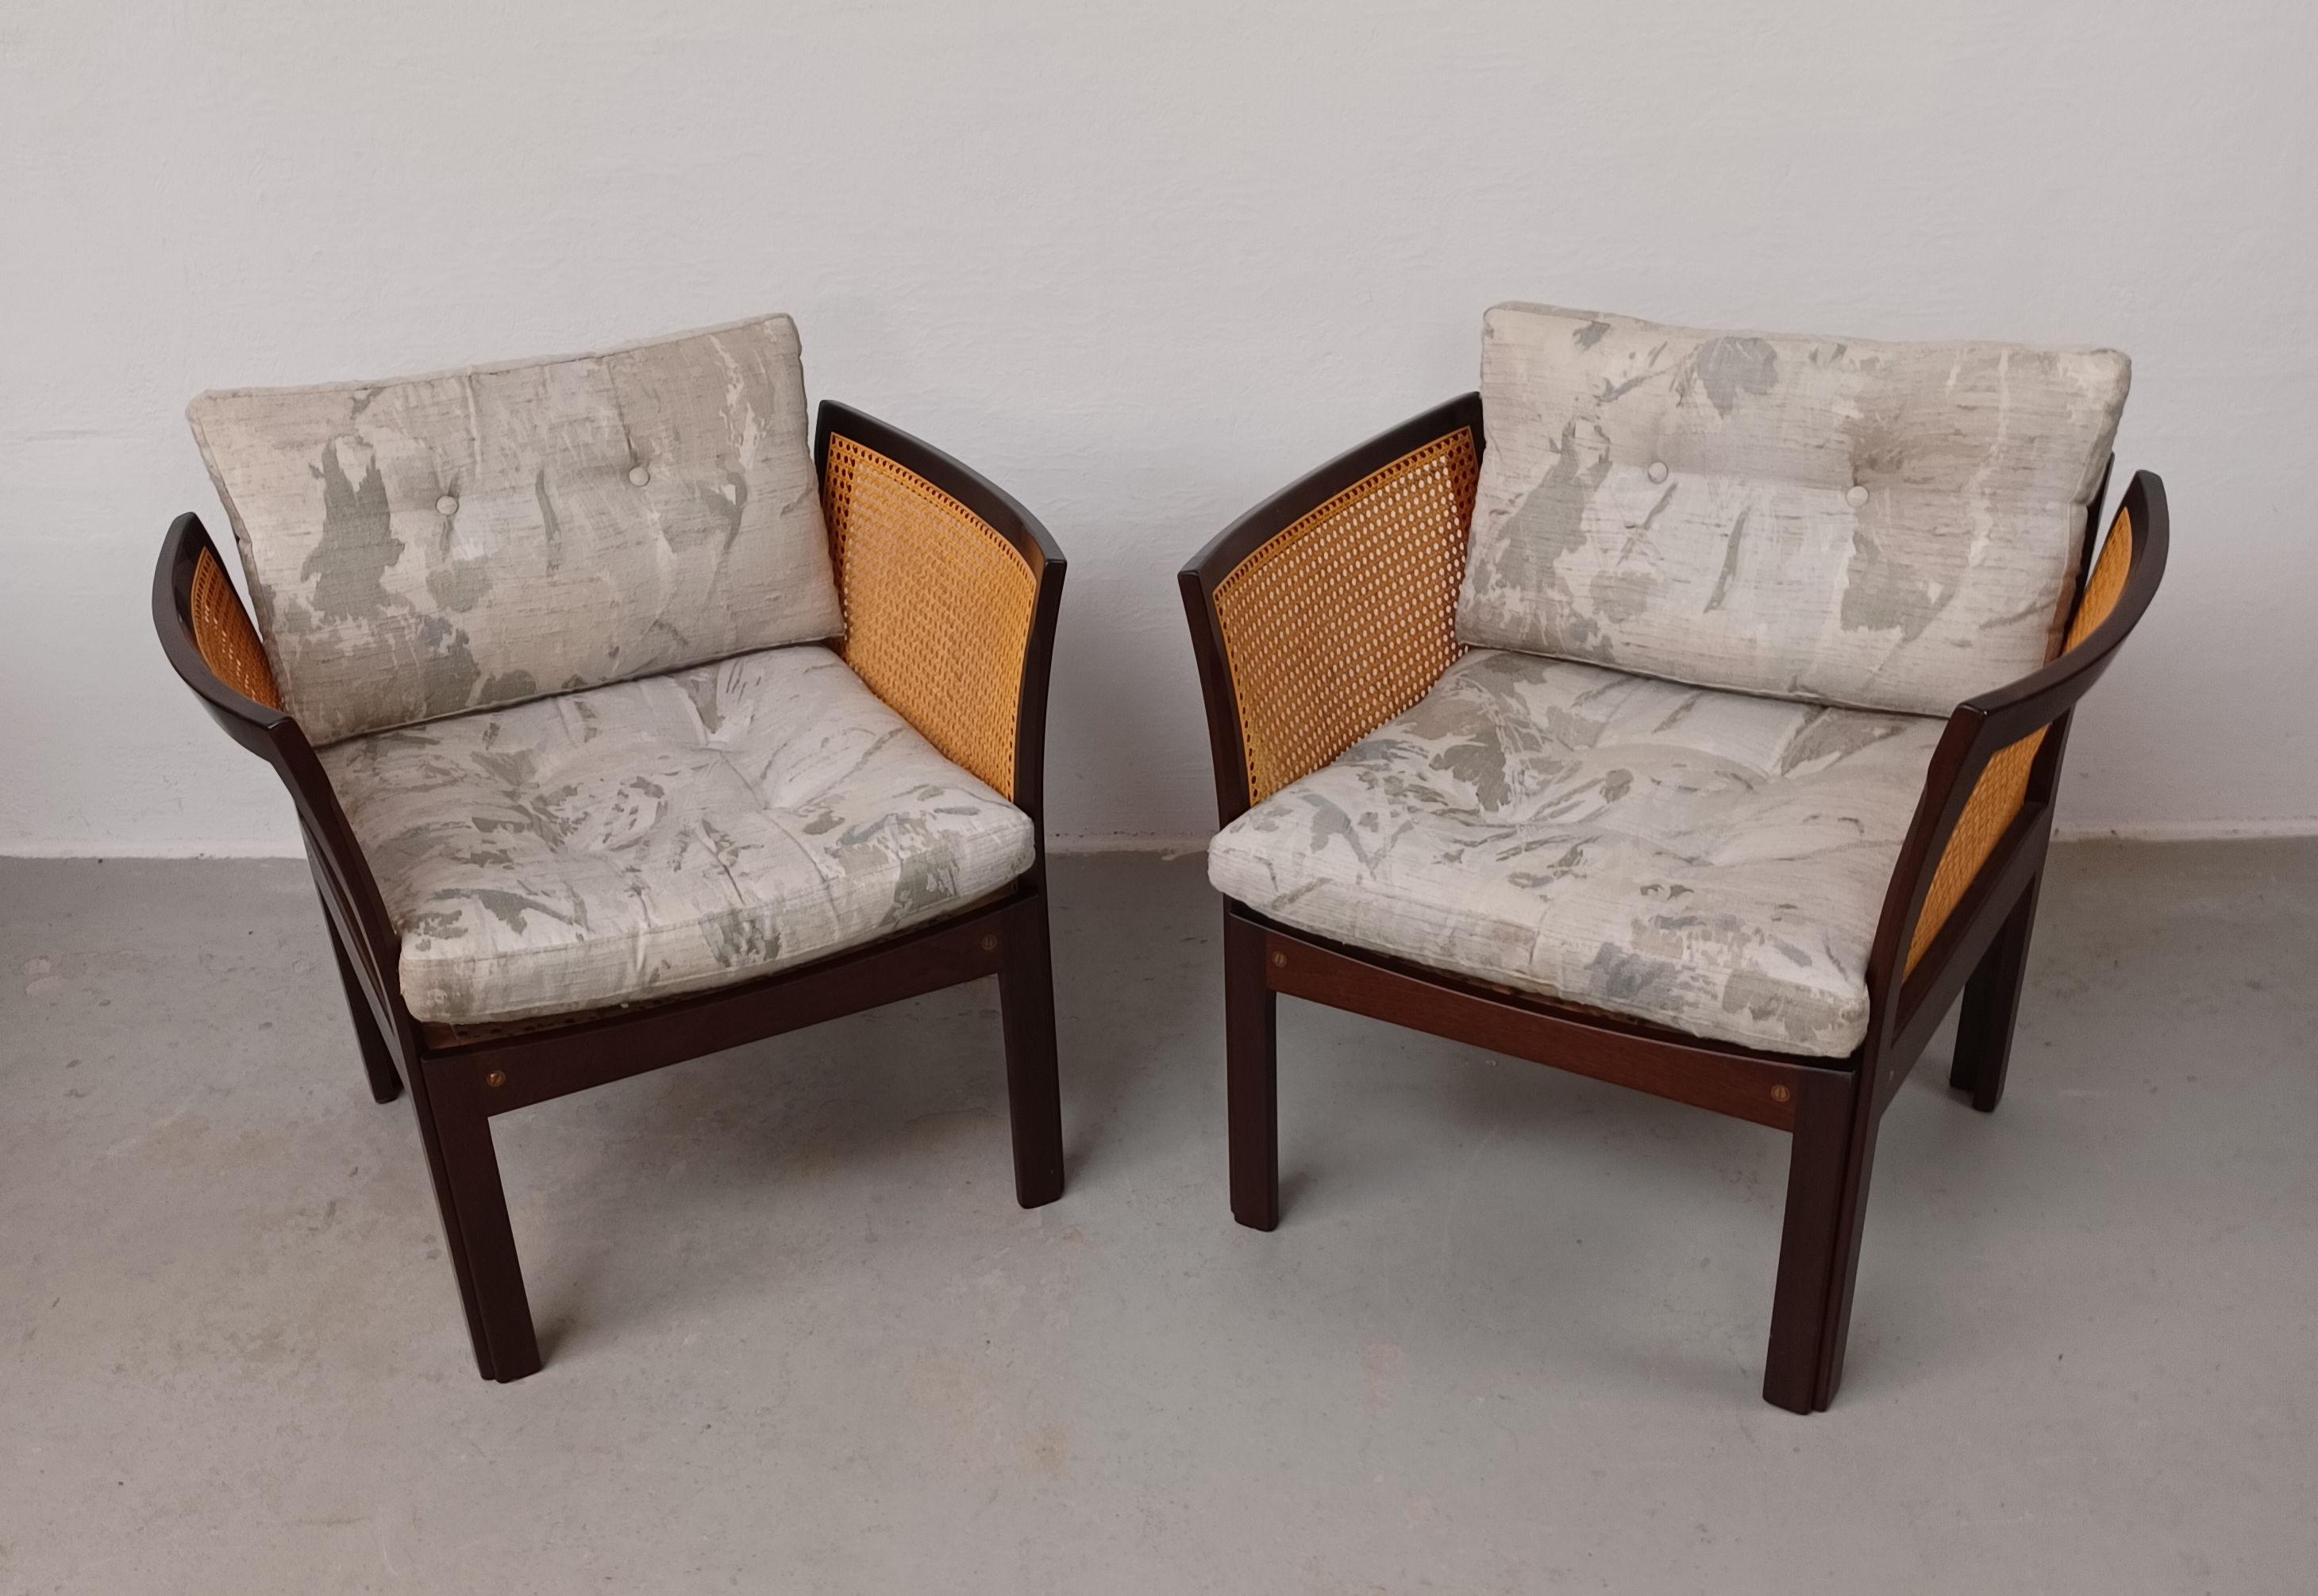 Satz von zwei Illum Vikkelso Danish Plexus Sesseln in Mahagoni

Die Plexus-Sessel-Serie wurde in den 1960er Jahren von Illum Wikkelsø entworfen und in den 1960er bis 1970er Jahren von CFC Silkeborg in Dänemark hergestellt.

Die Sessel wurden von